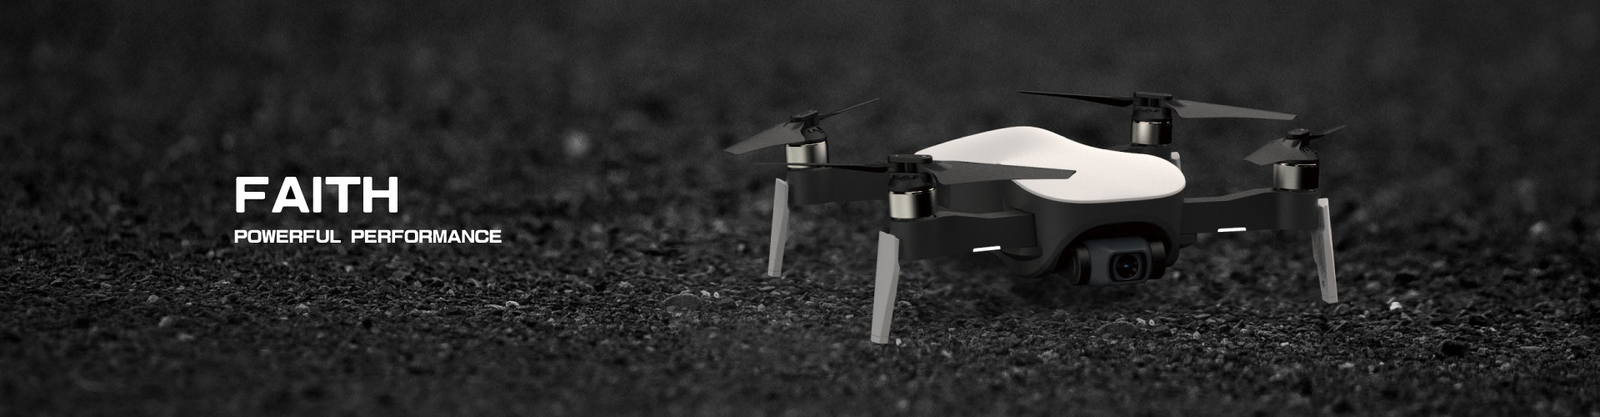 jakość Cfly Drone fabryka